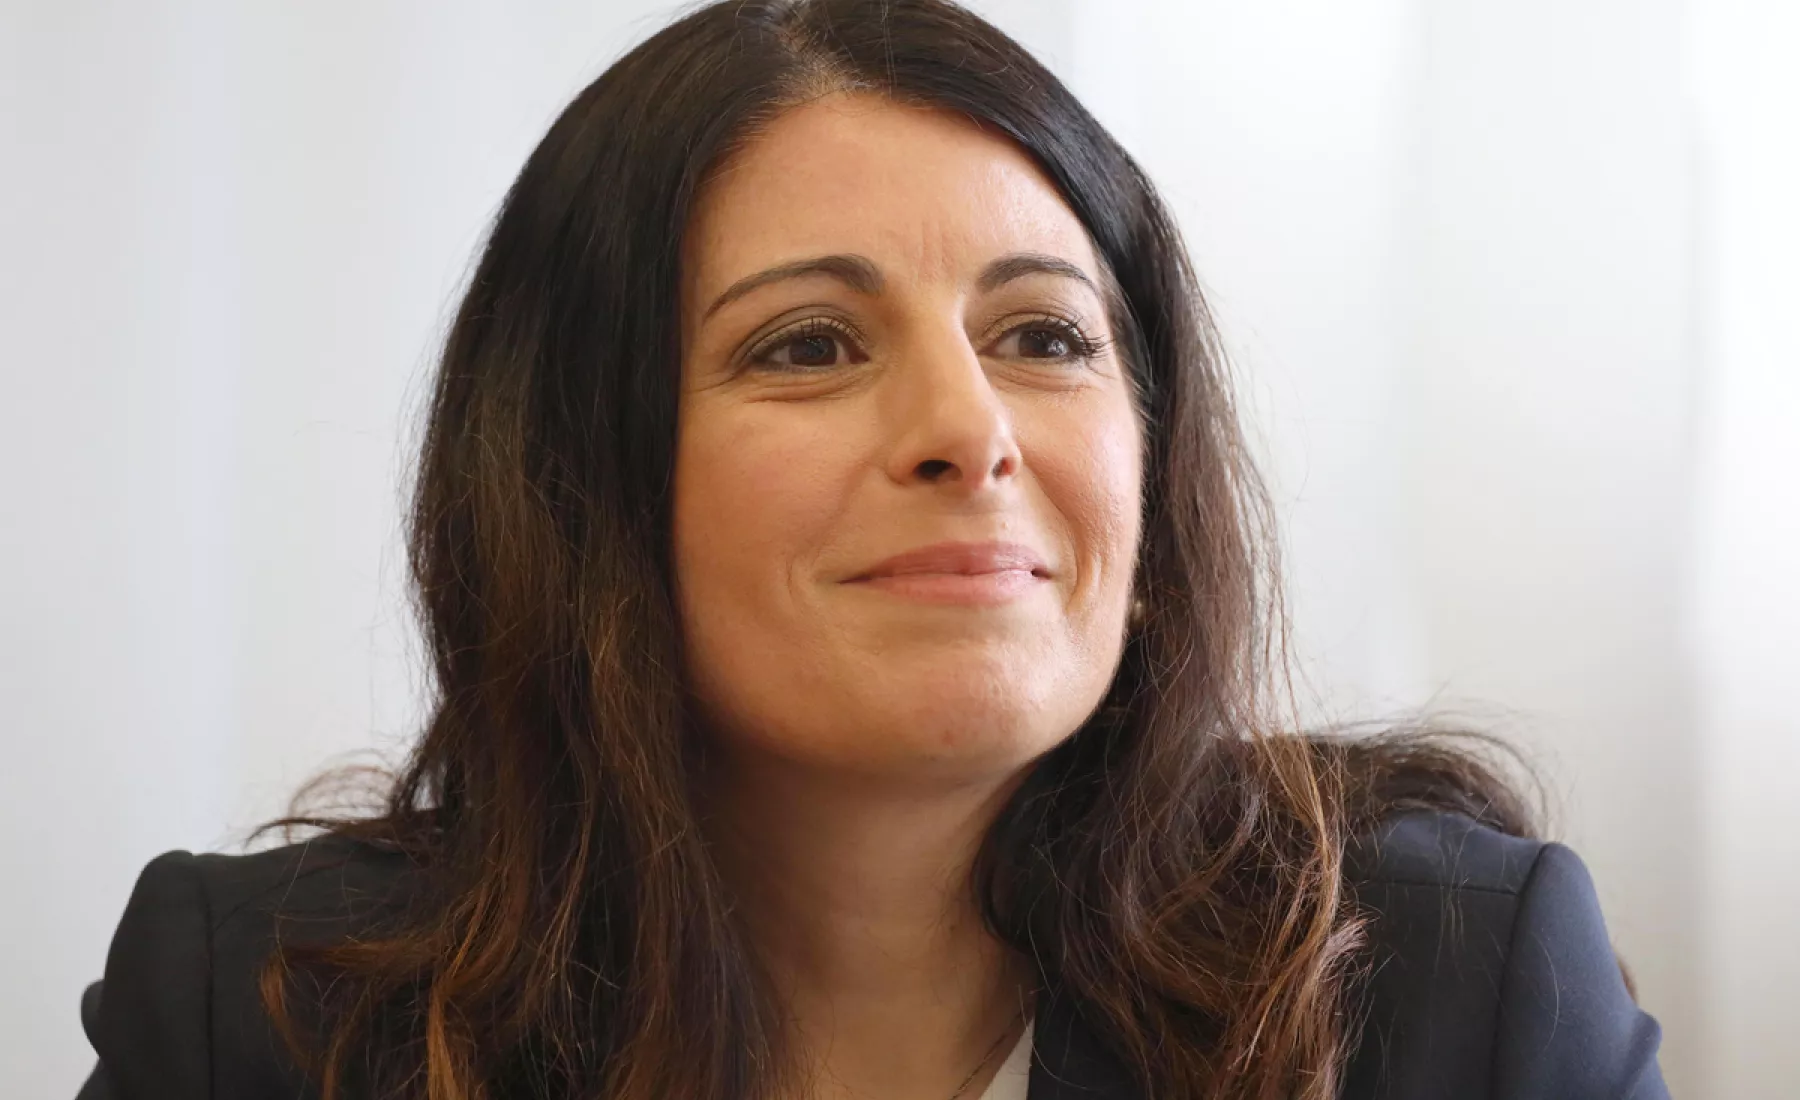 Daniela Cavallo, Nachfolgerin des VW-Betriebsratschefs und Aufsichtsratsmitglieds Osterloh